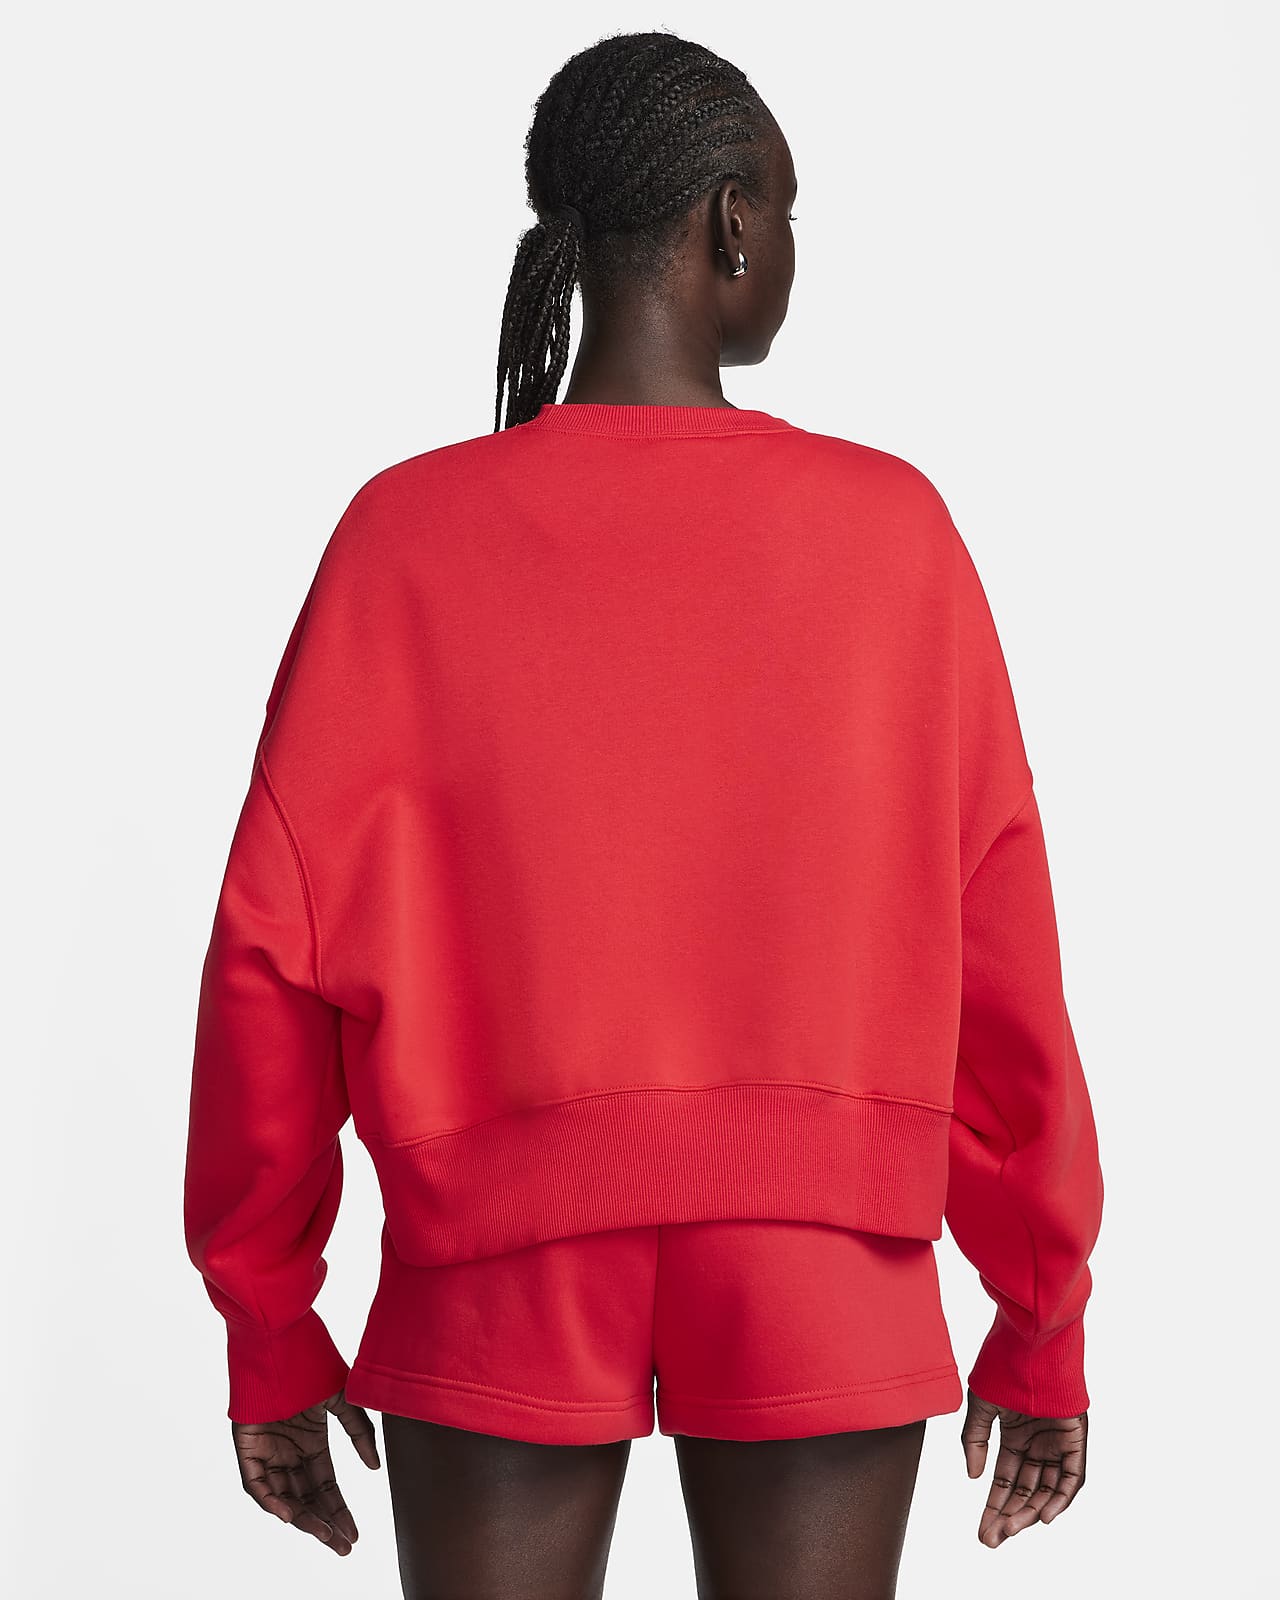 Nike Women's Tech Fleece Crew Knit Sweatshirt (Large, University Red) 